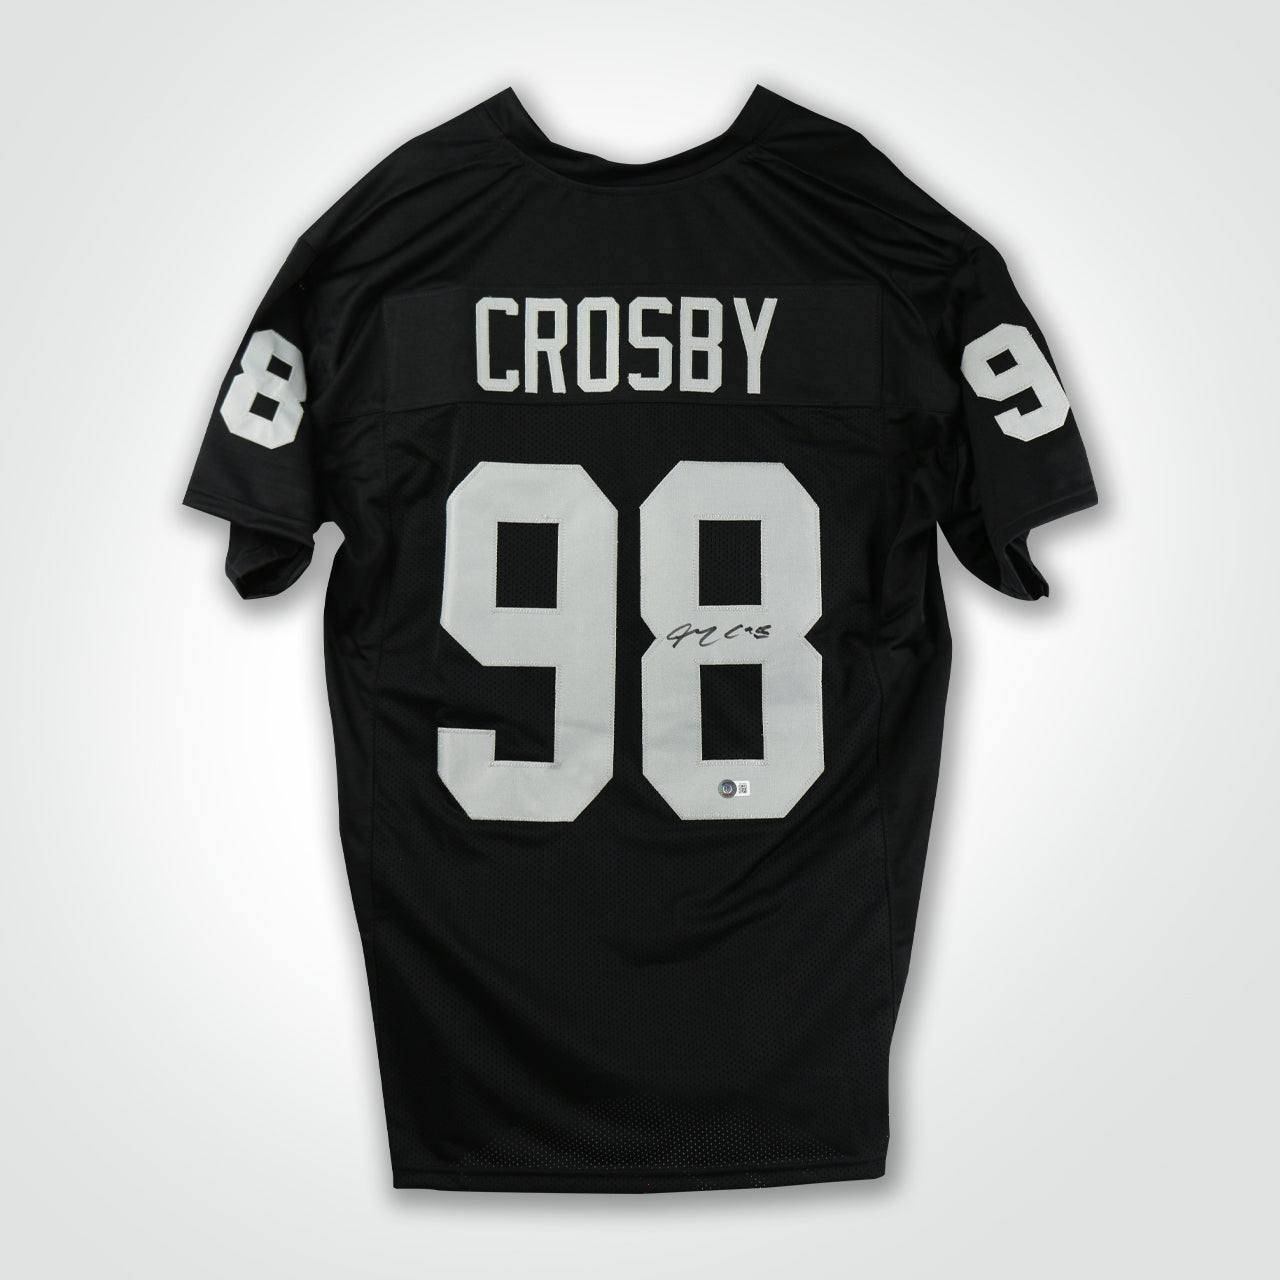 Maxx Crosby Signed Jersey